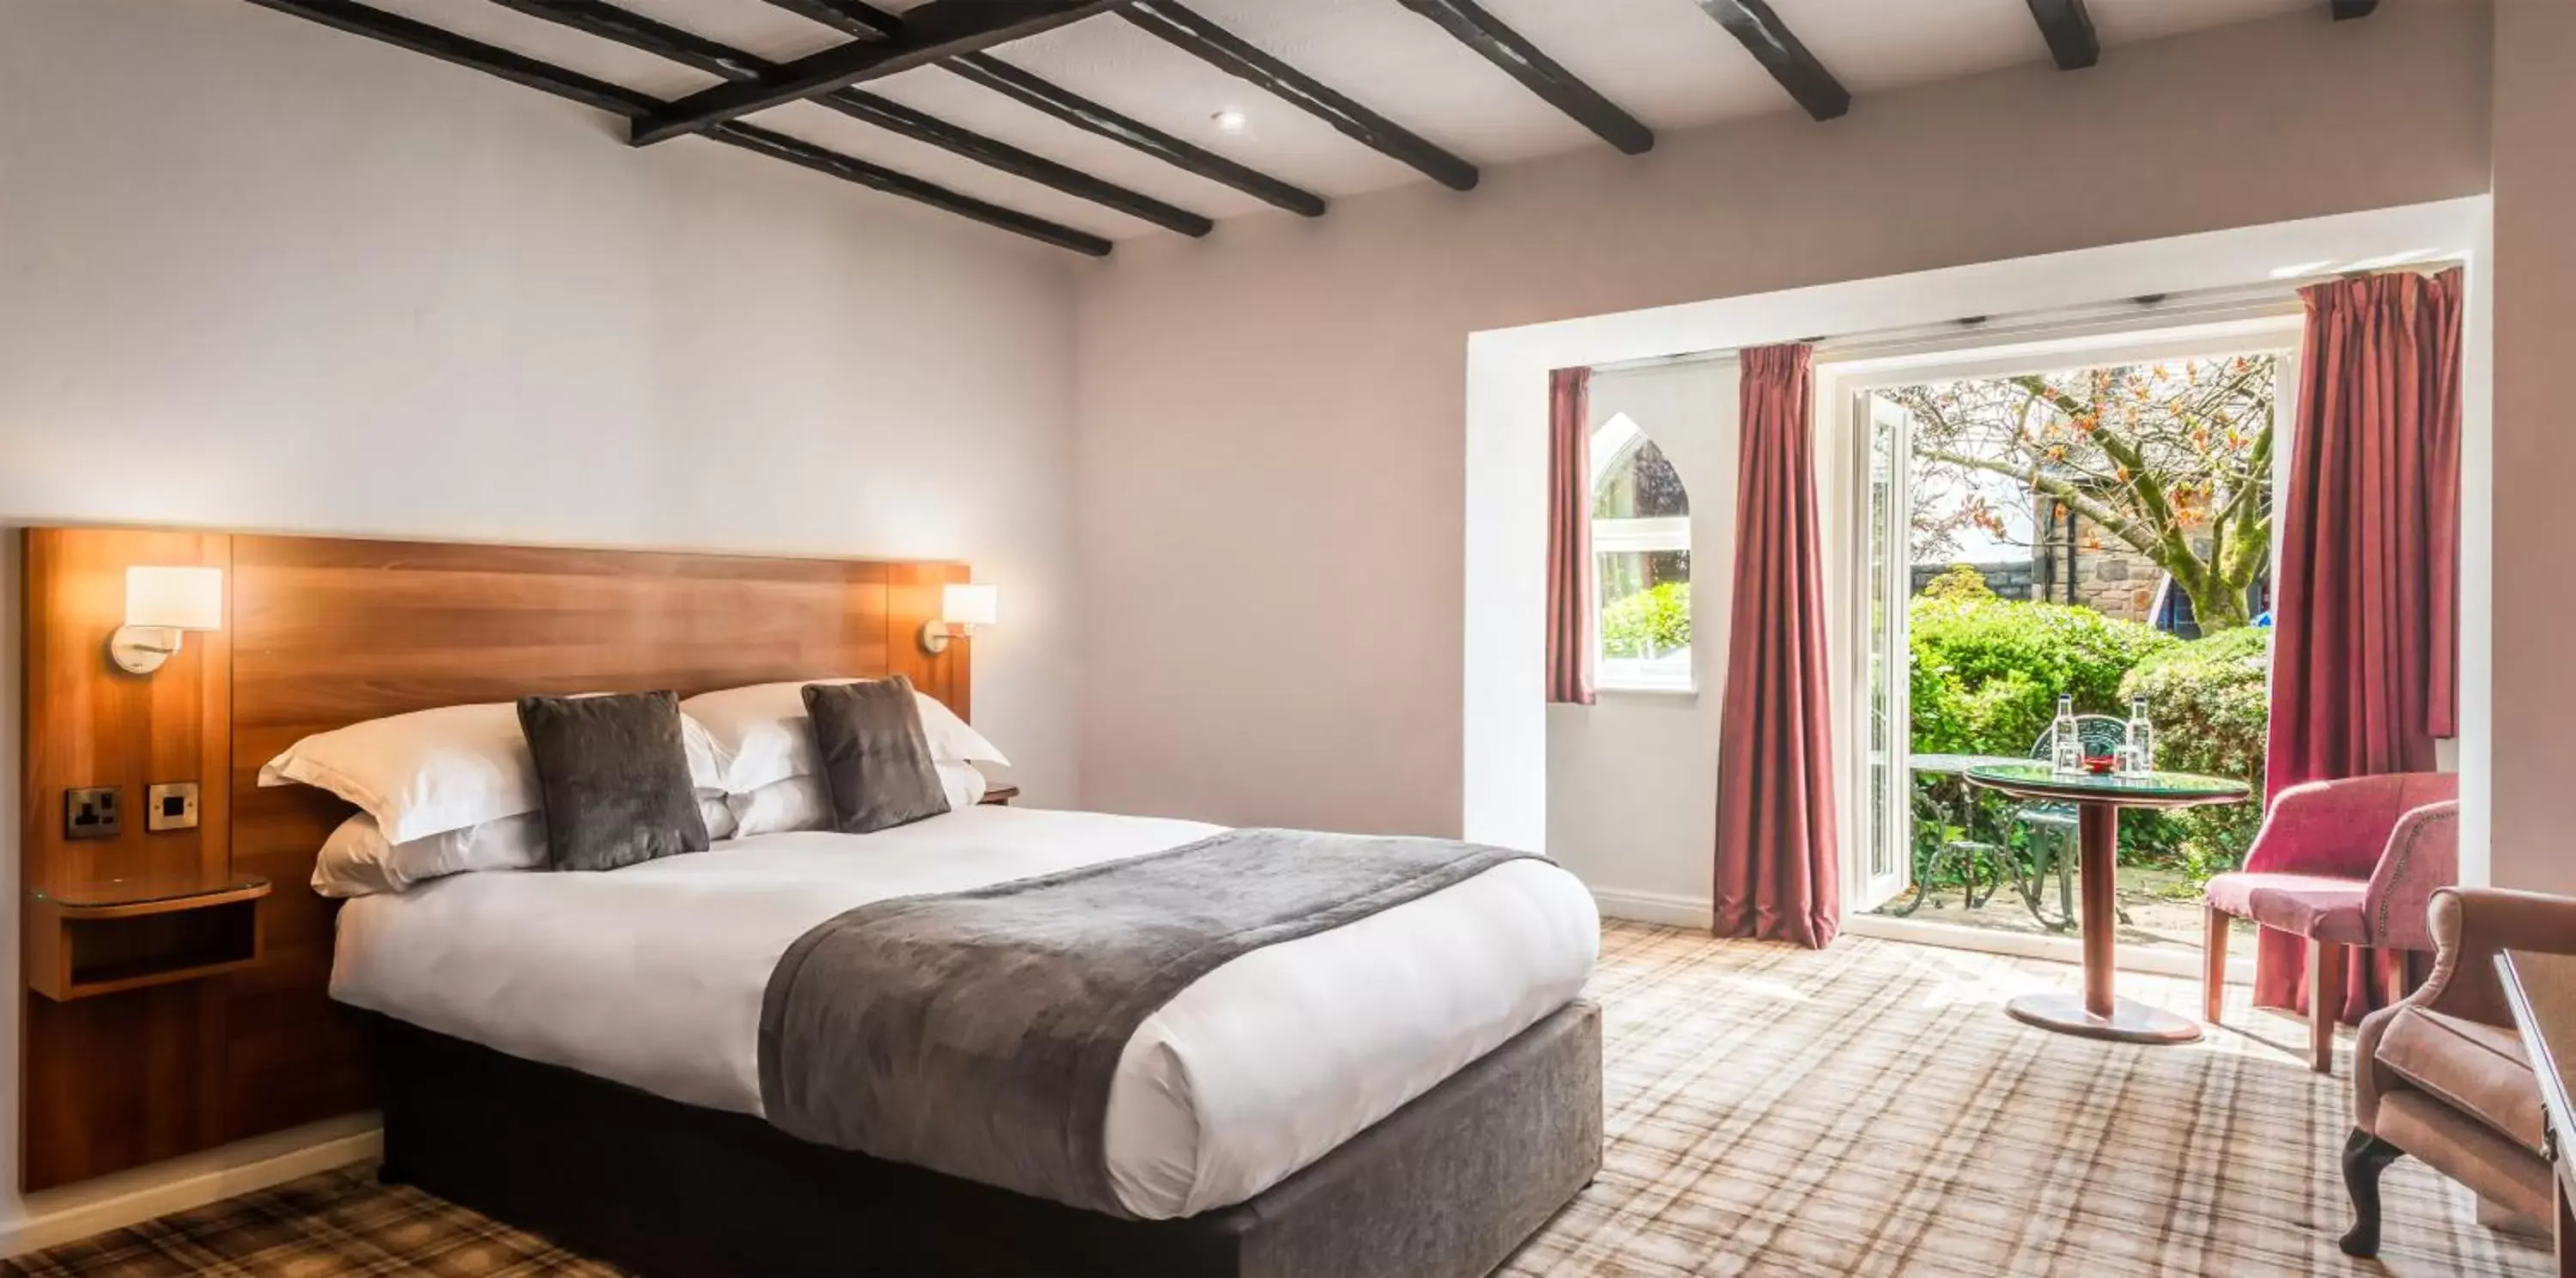 Bedroom, Bed in Last Drop Village Hotel & Spa